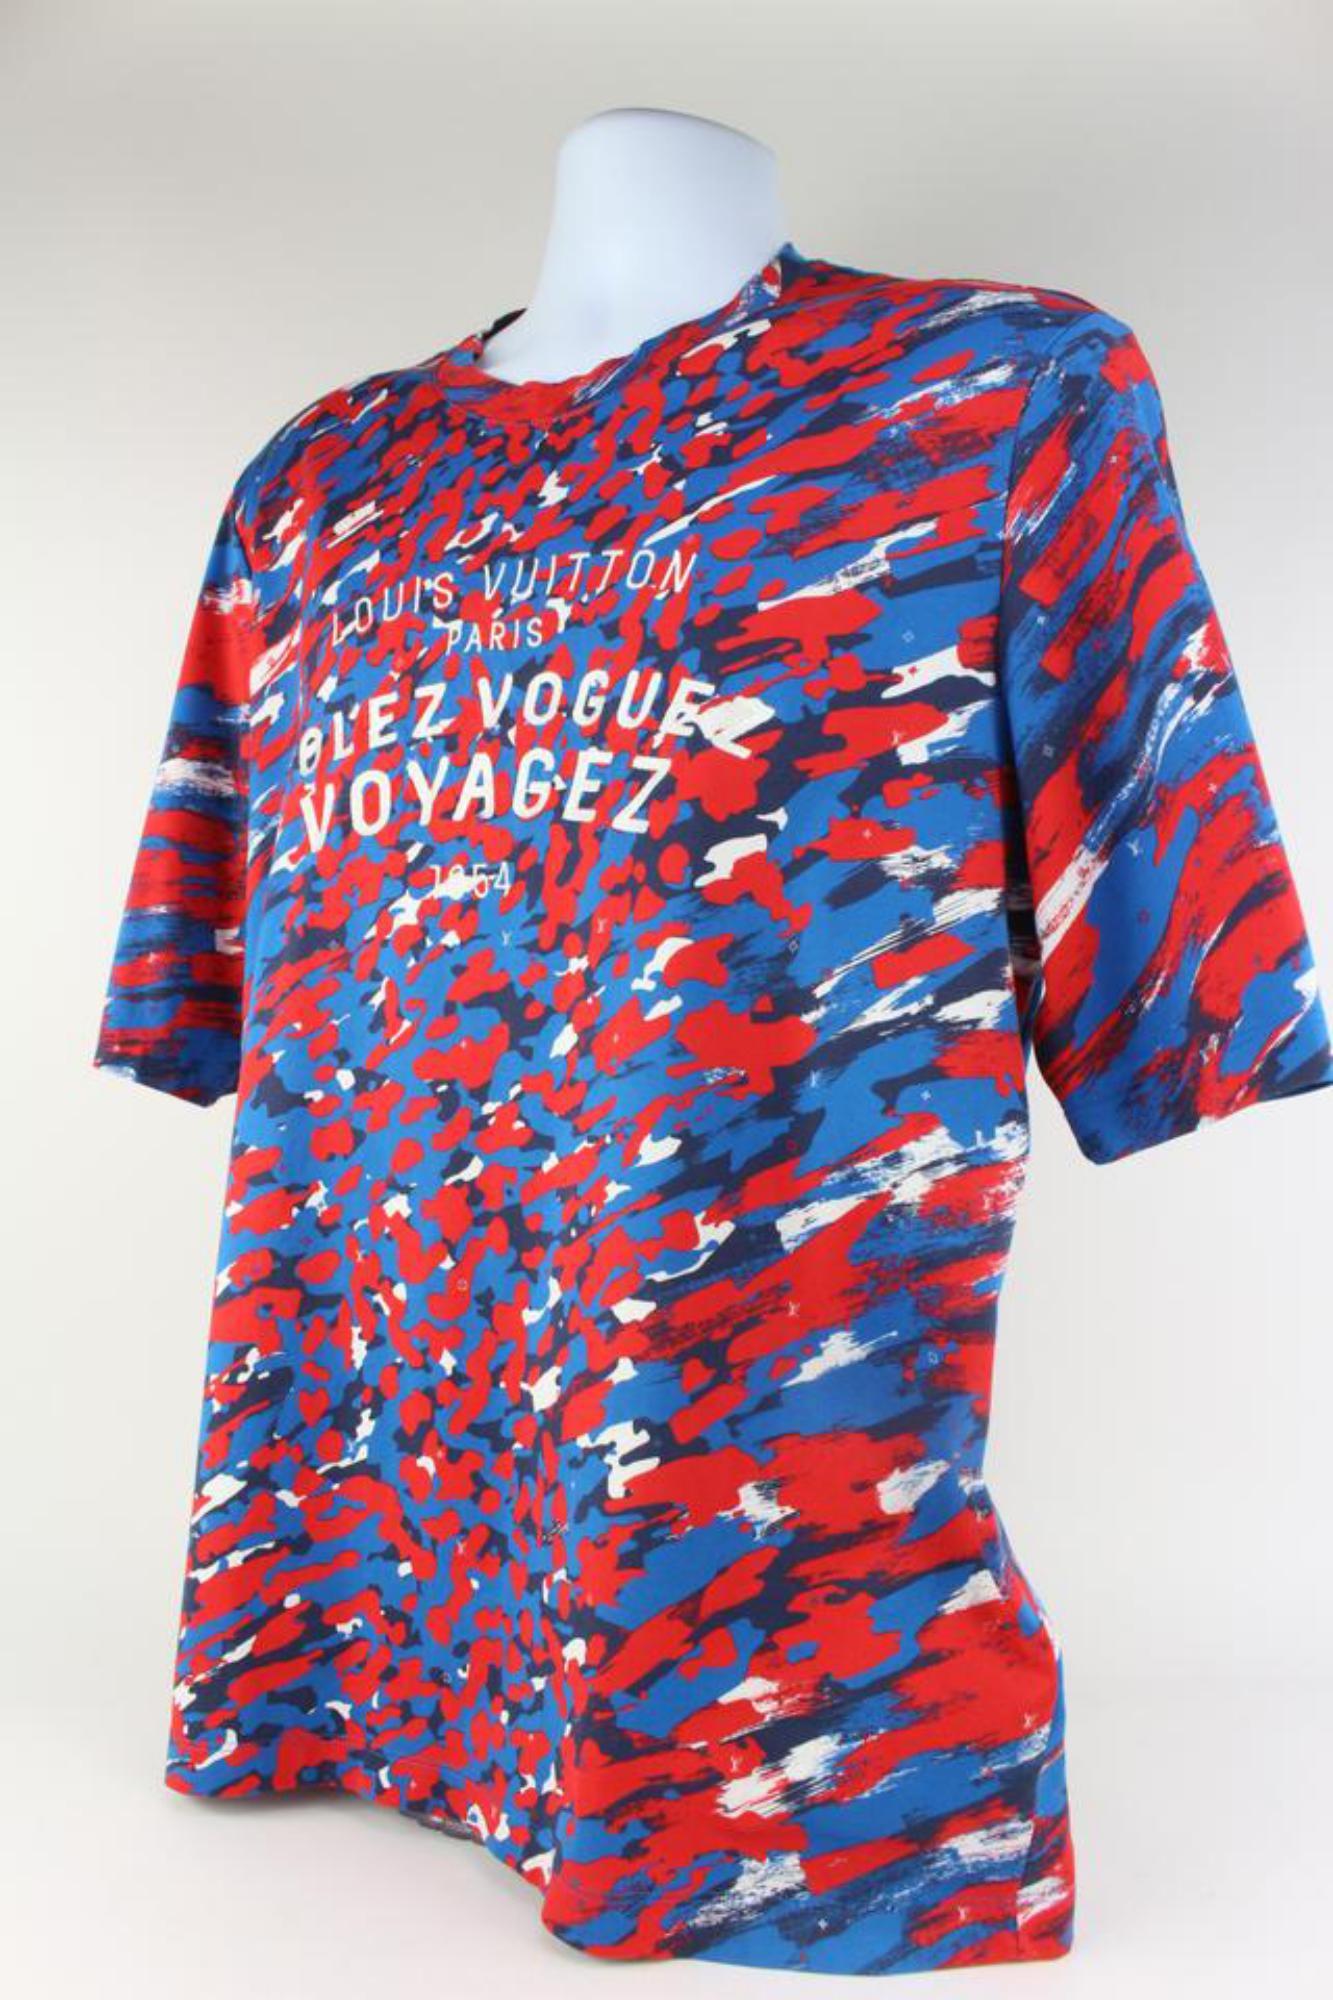 Louis Vuitton Men's 3XL 4L Red x Blue Camo Volez Voguez Voyagez T-Shirt Tee 1116 5